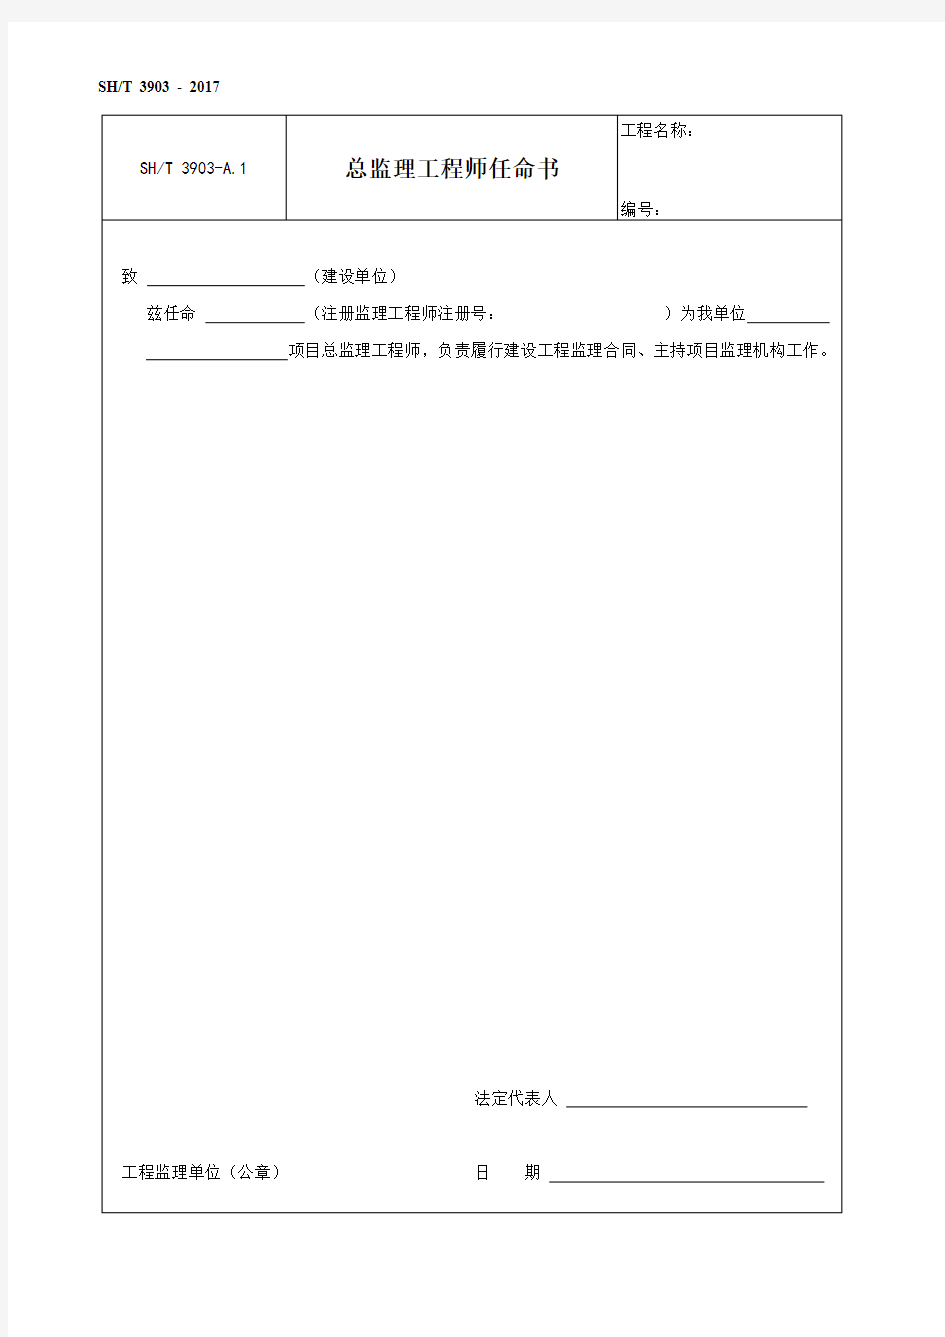 石油化工建设工程项目监理规范(SH／T 3903-2017)附录A和B表格(中文版)